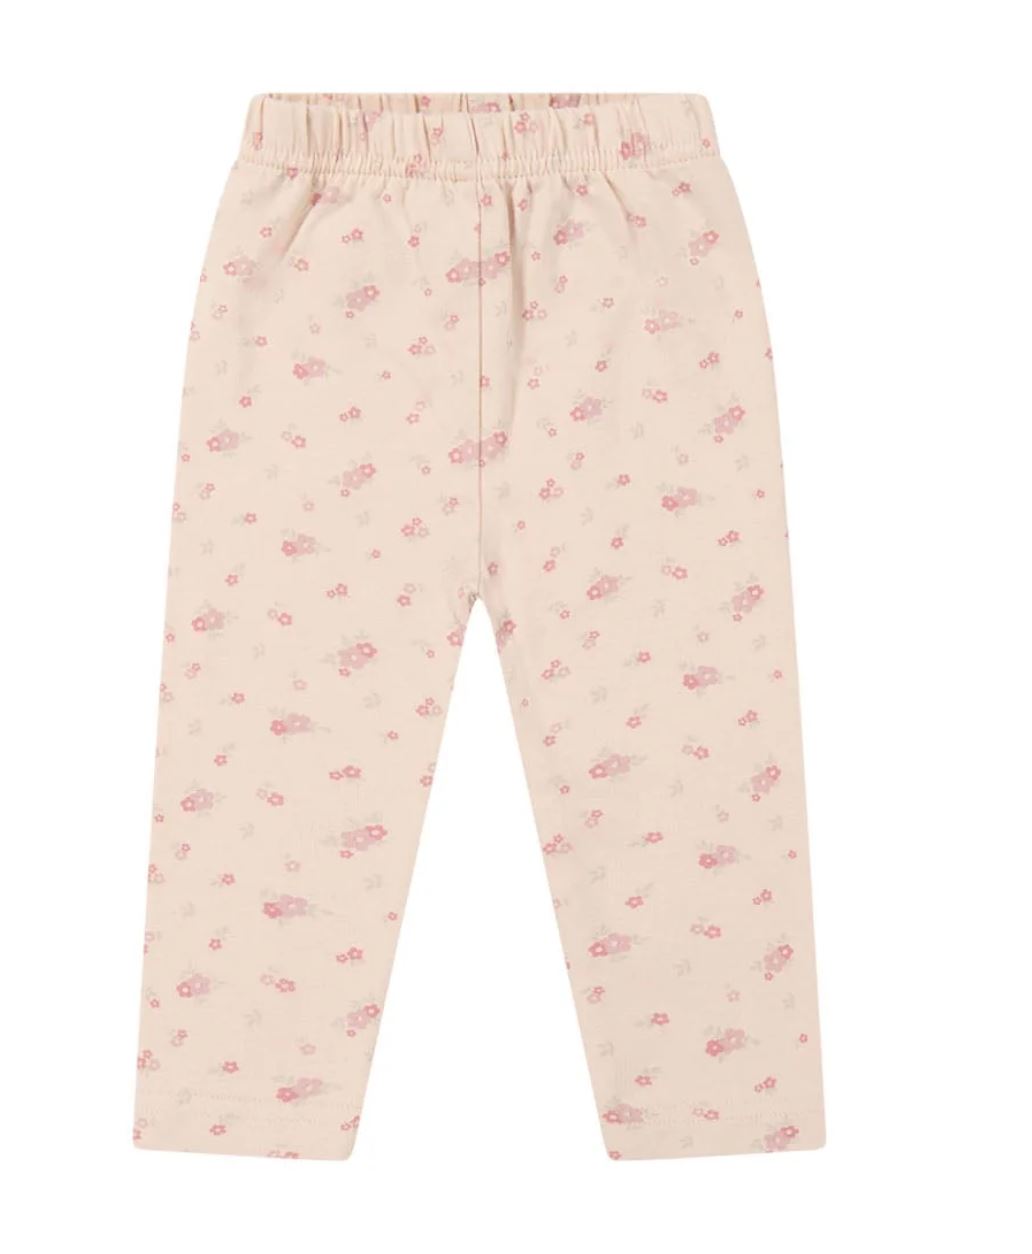 Organic Cotton Legging - Floral Pink